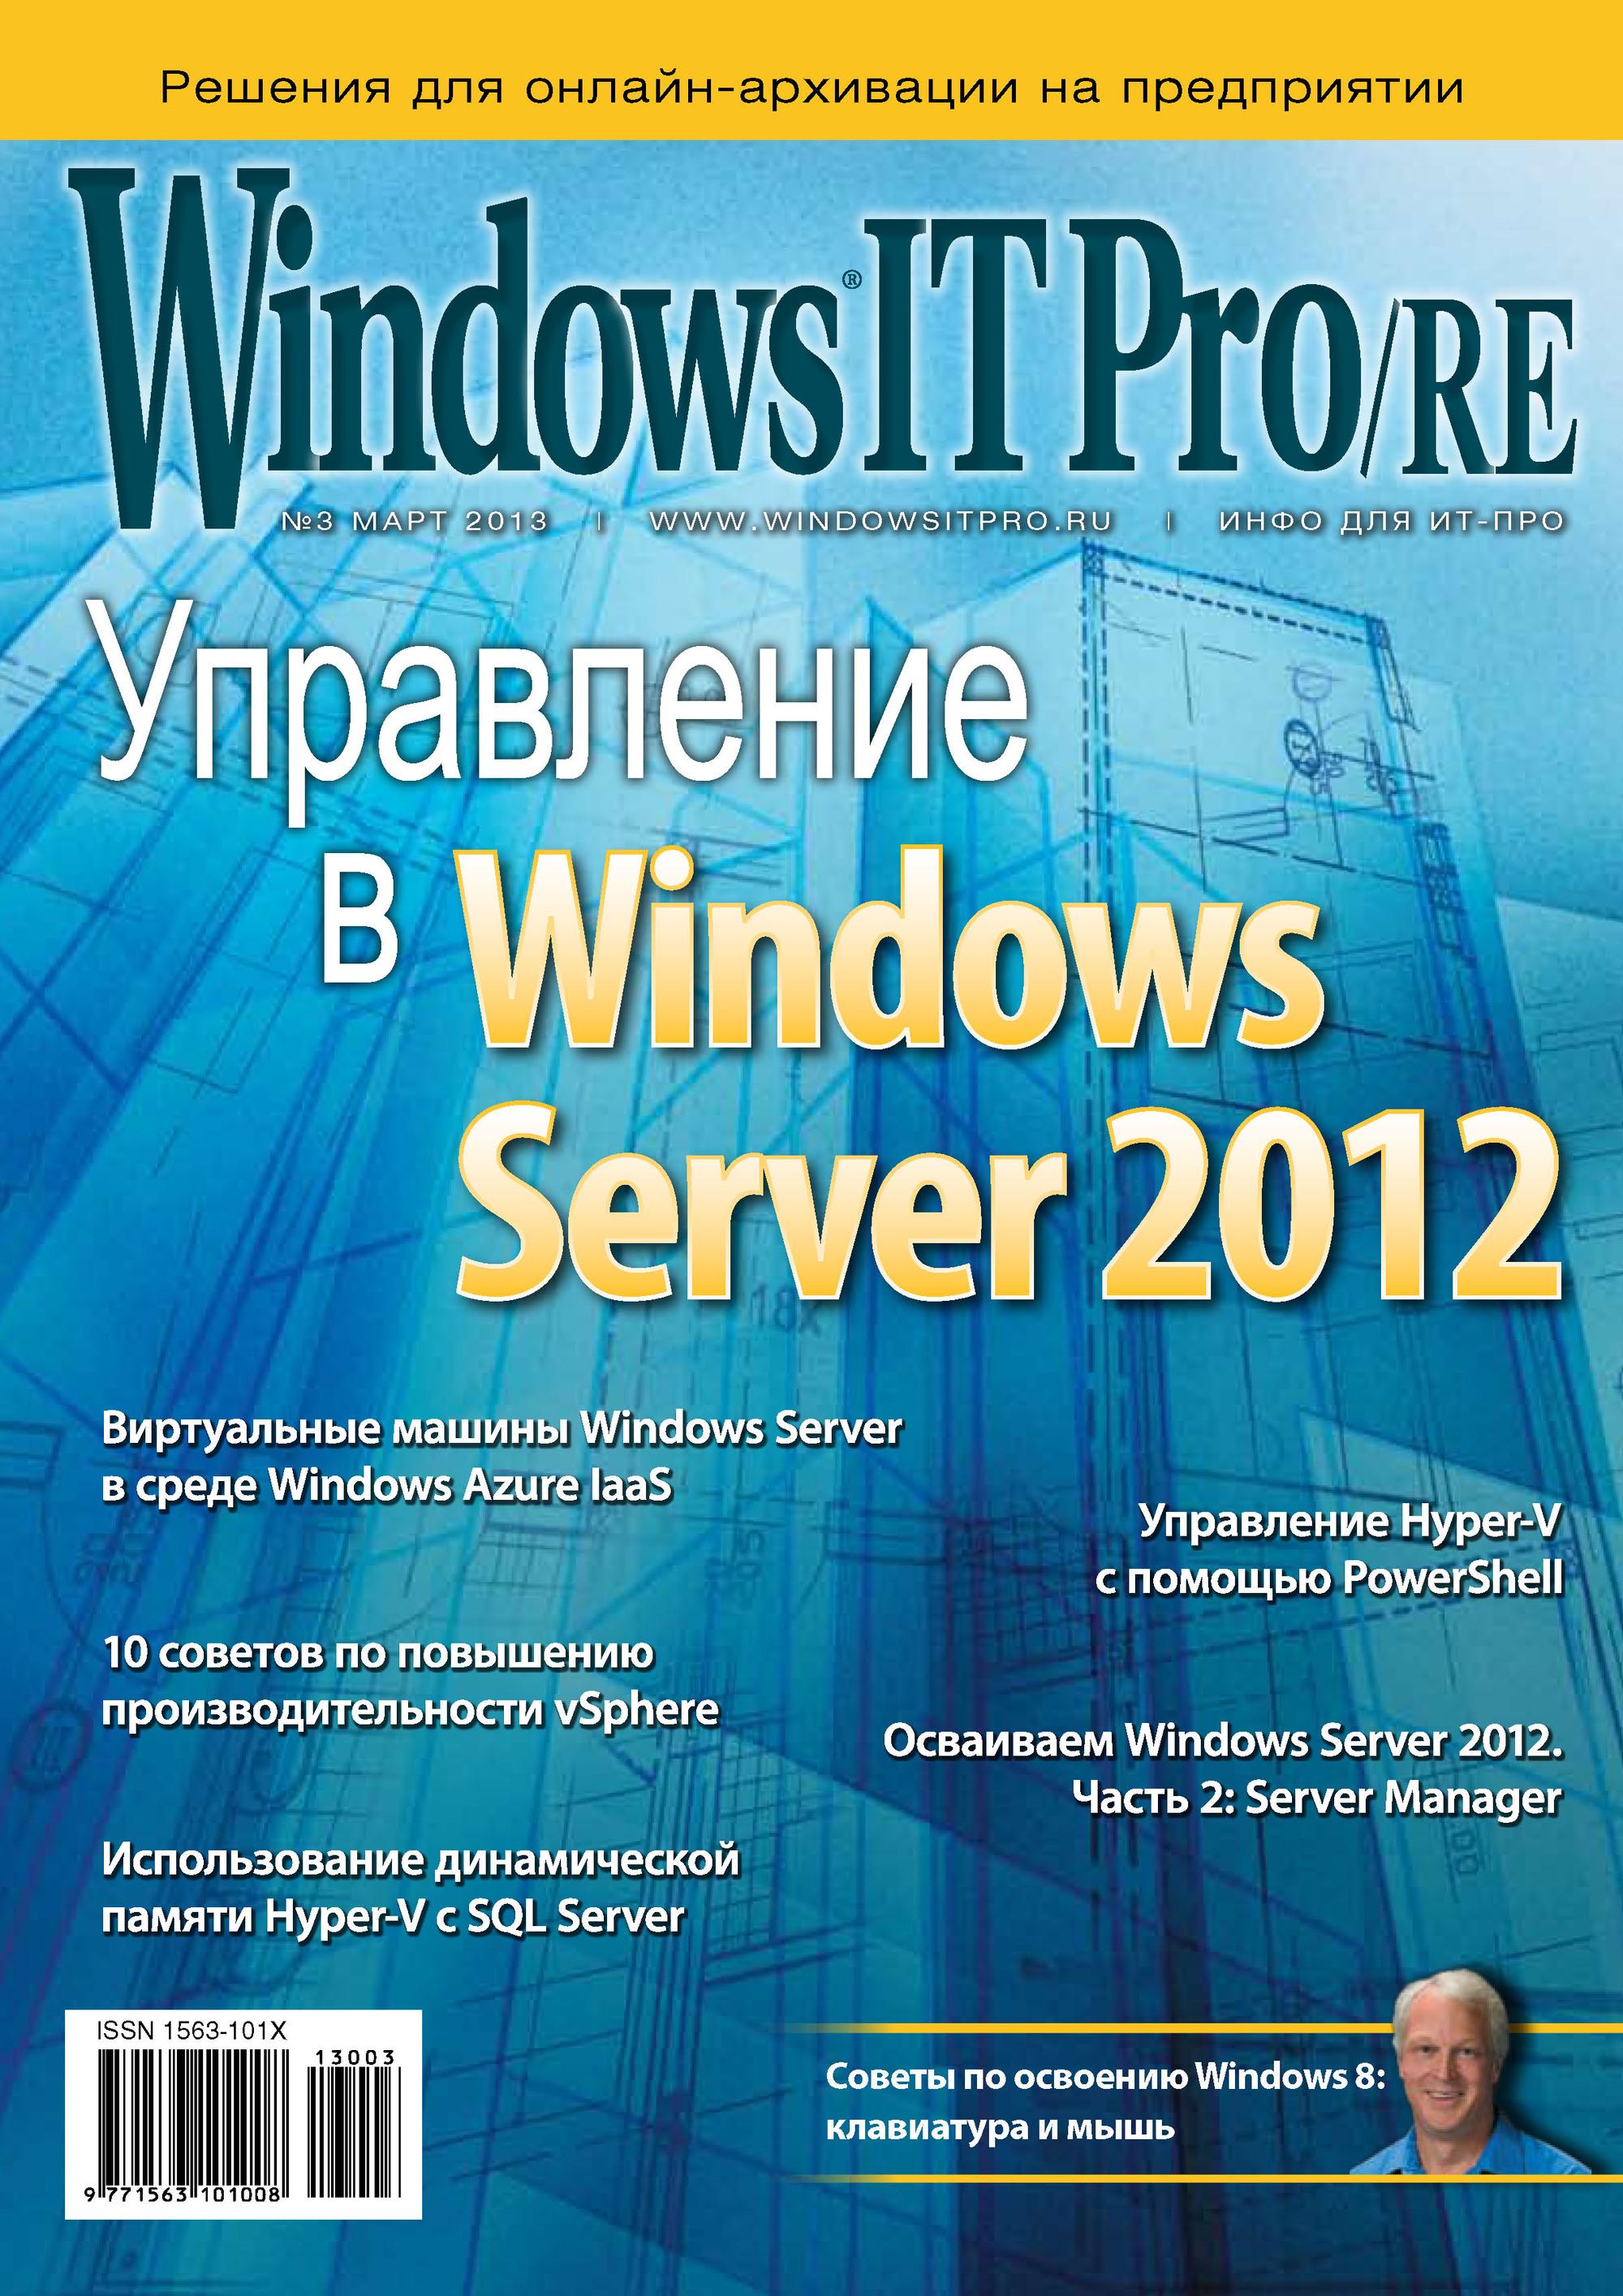 Windows IT Pro/RE№03/2013